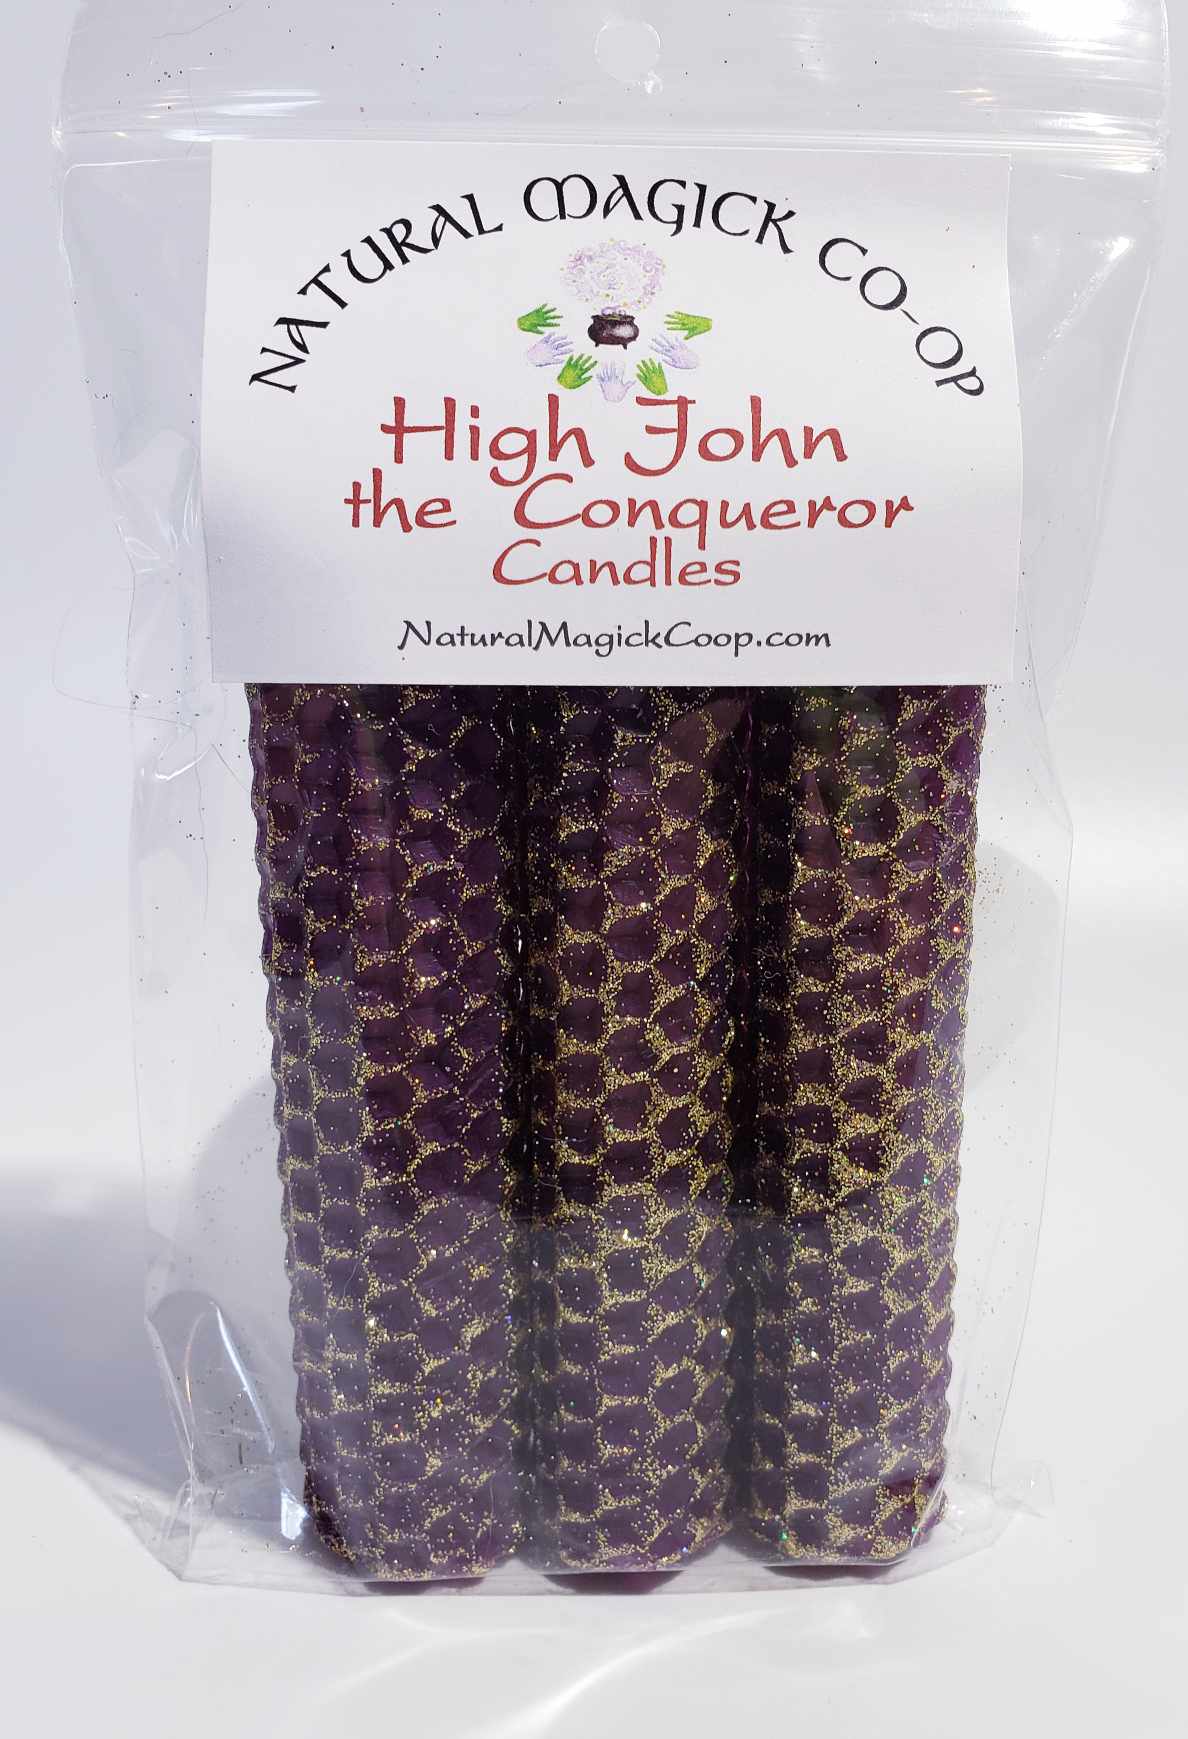 High John the Conqueror Candles